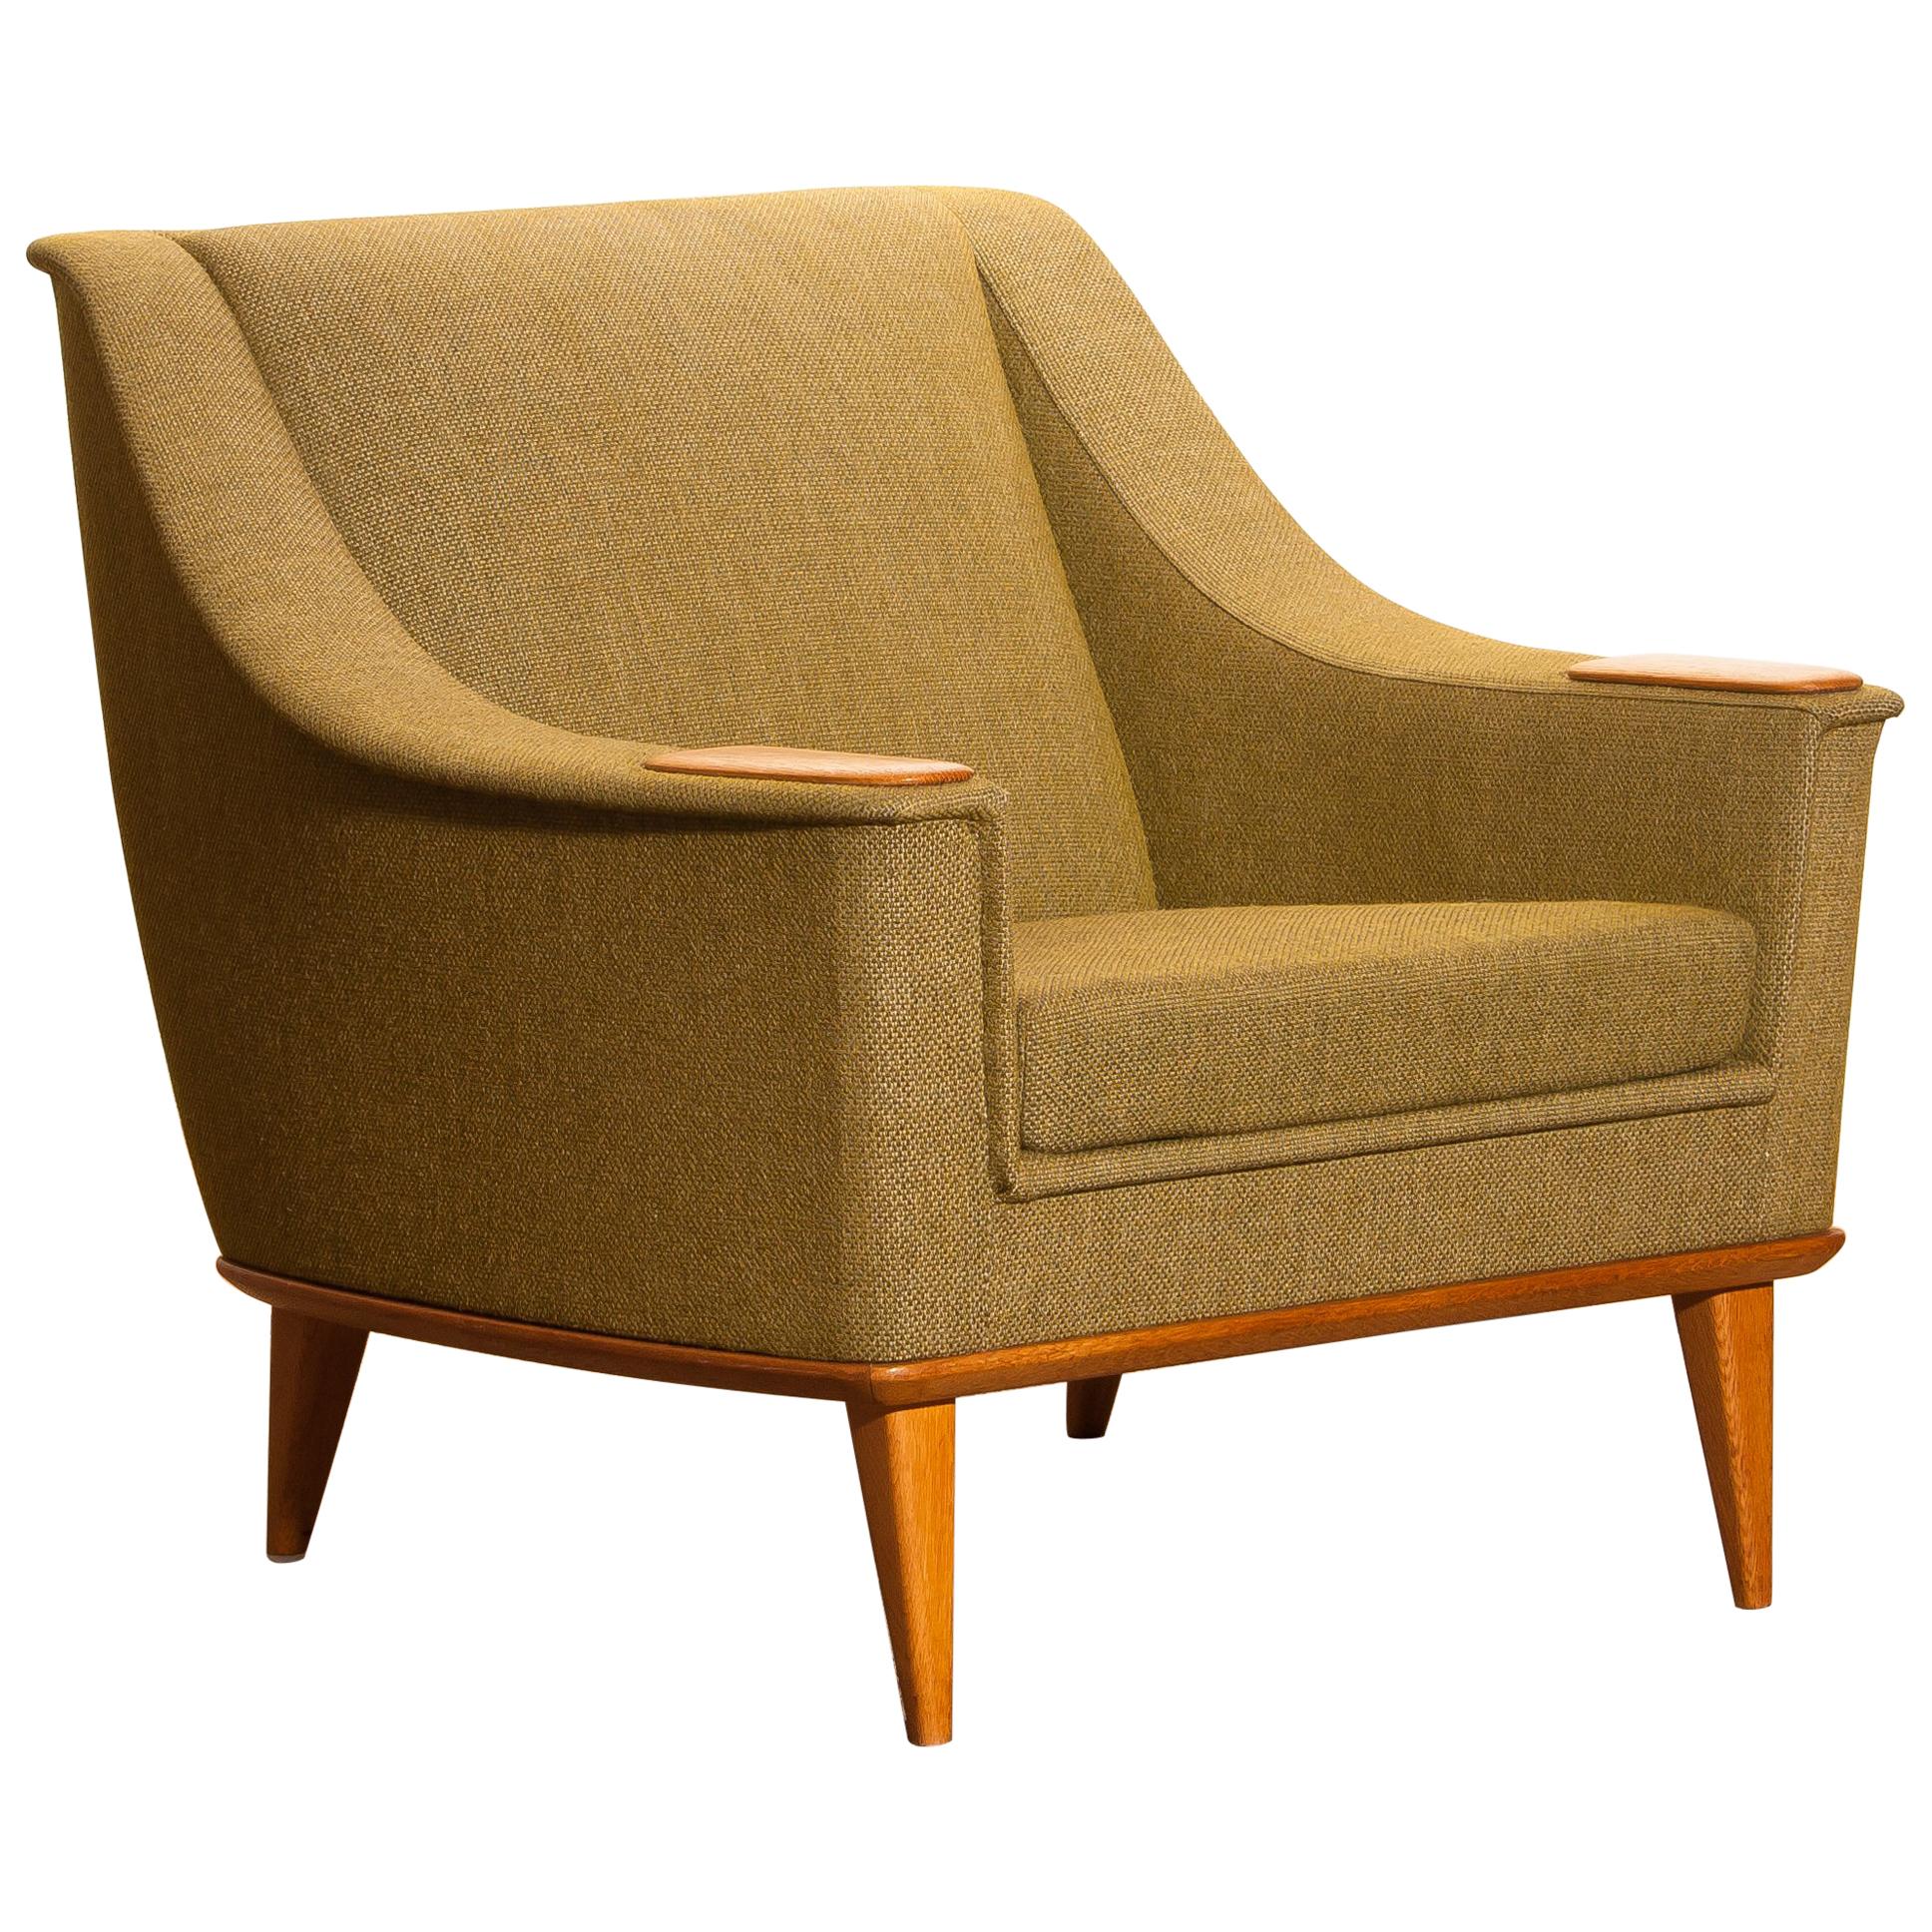 1960s, Green Upholstered Oak Lounge / Easy Chair, Folke Ohlsson for DUX, Sweden 1